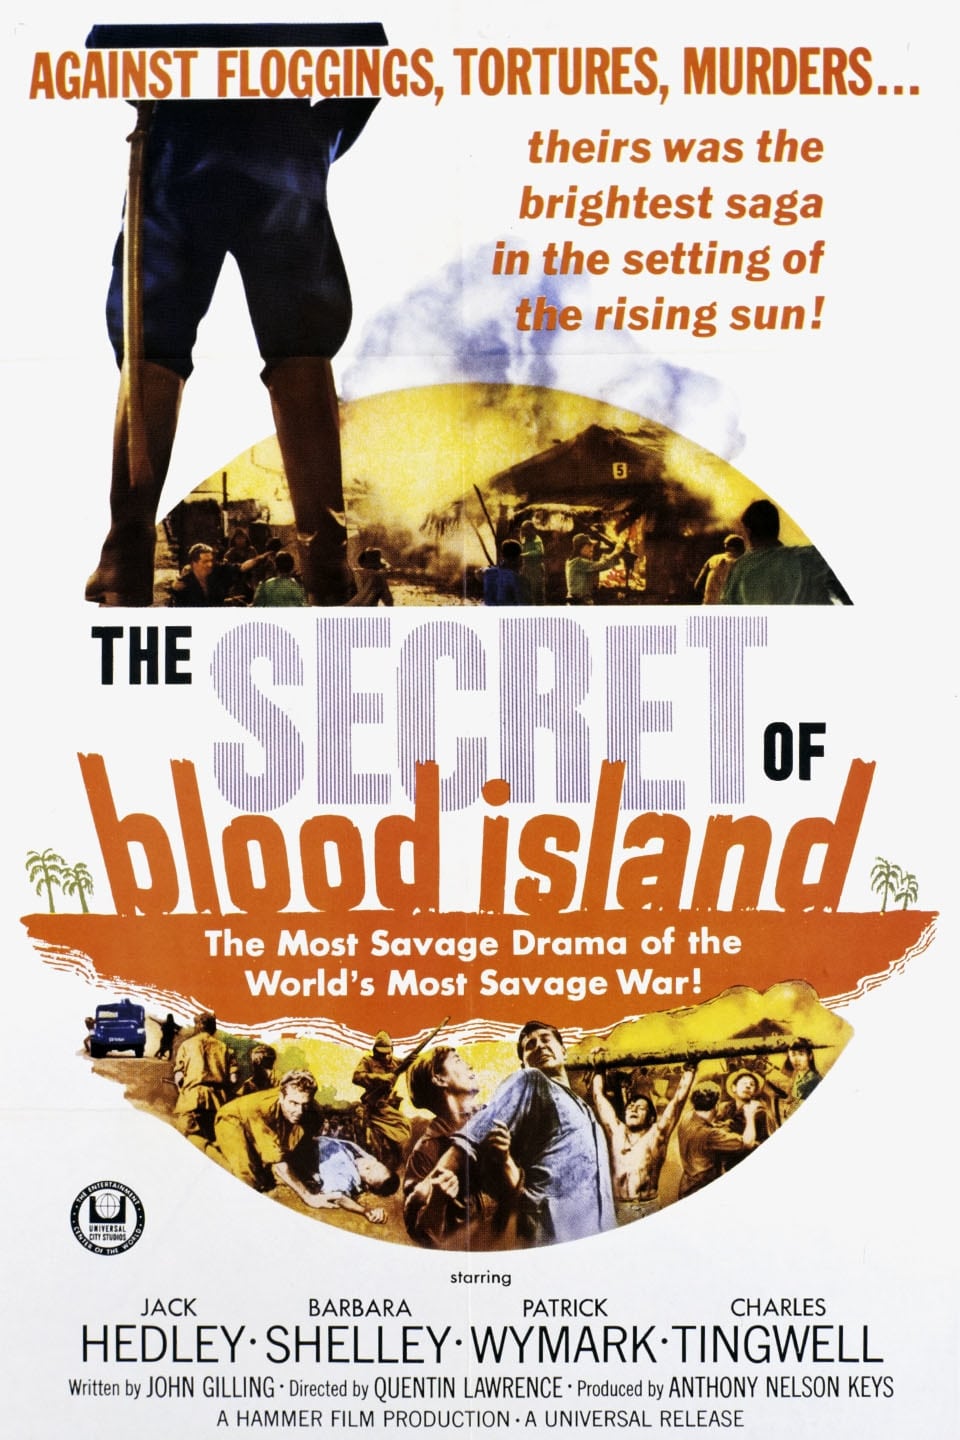 Das Geheimnis der Blutinsel